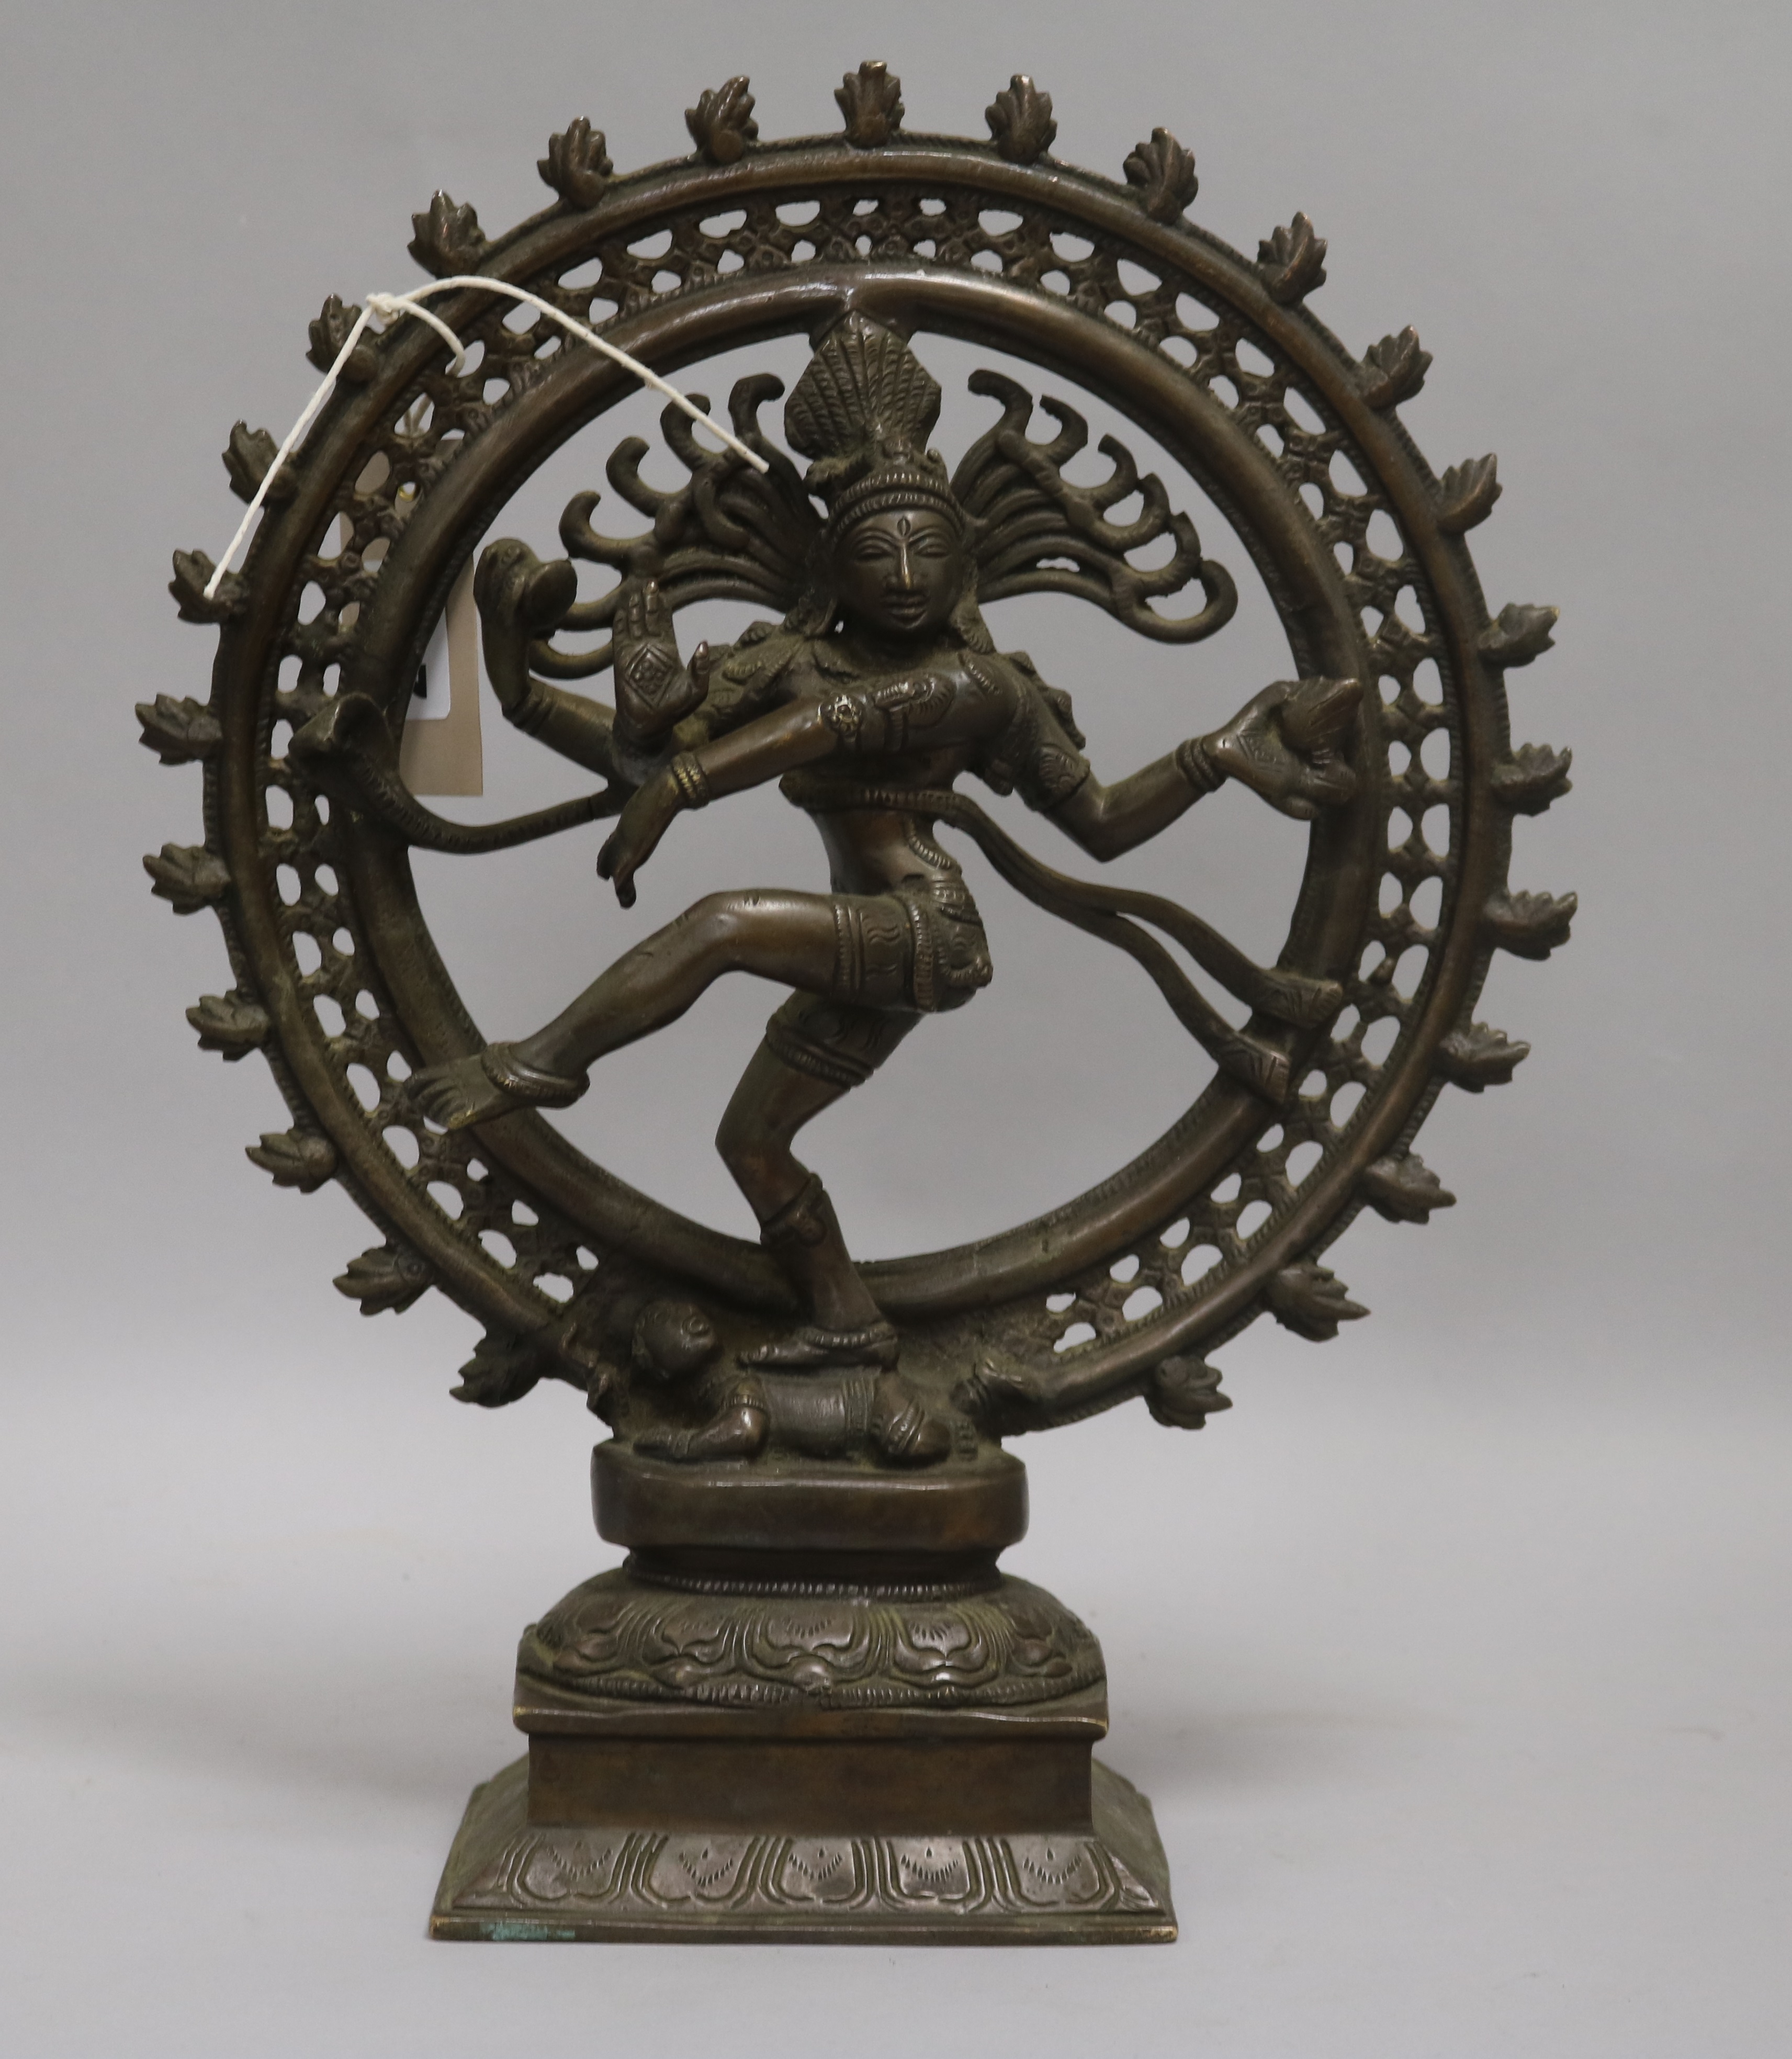 A bronze Hindu figure